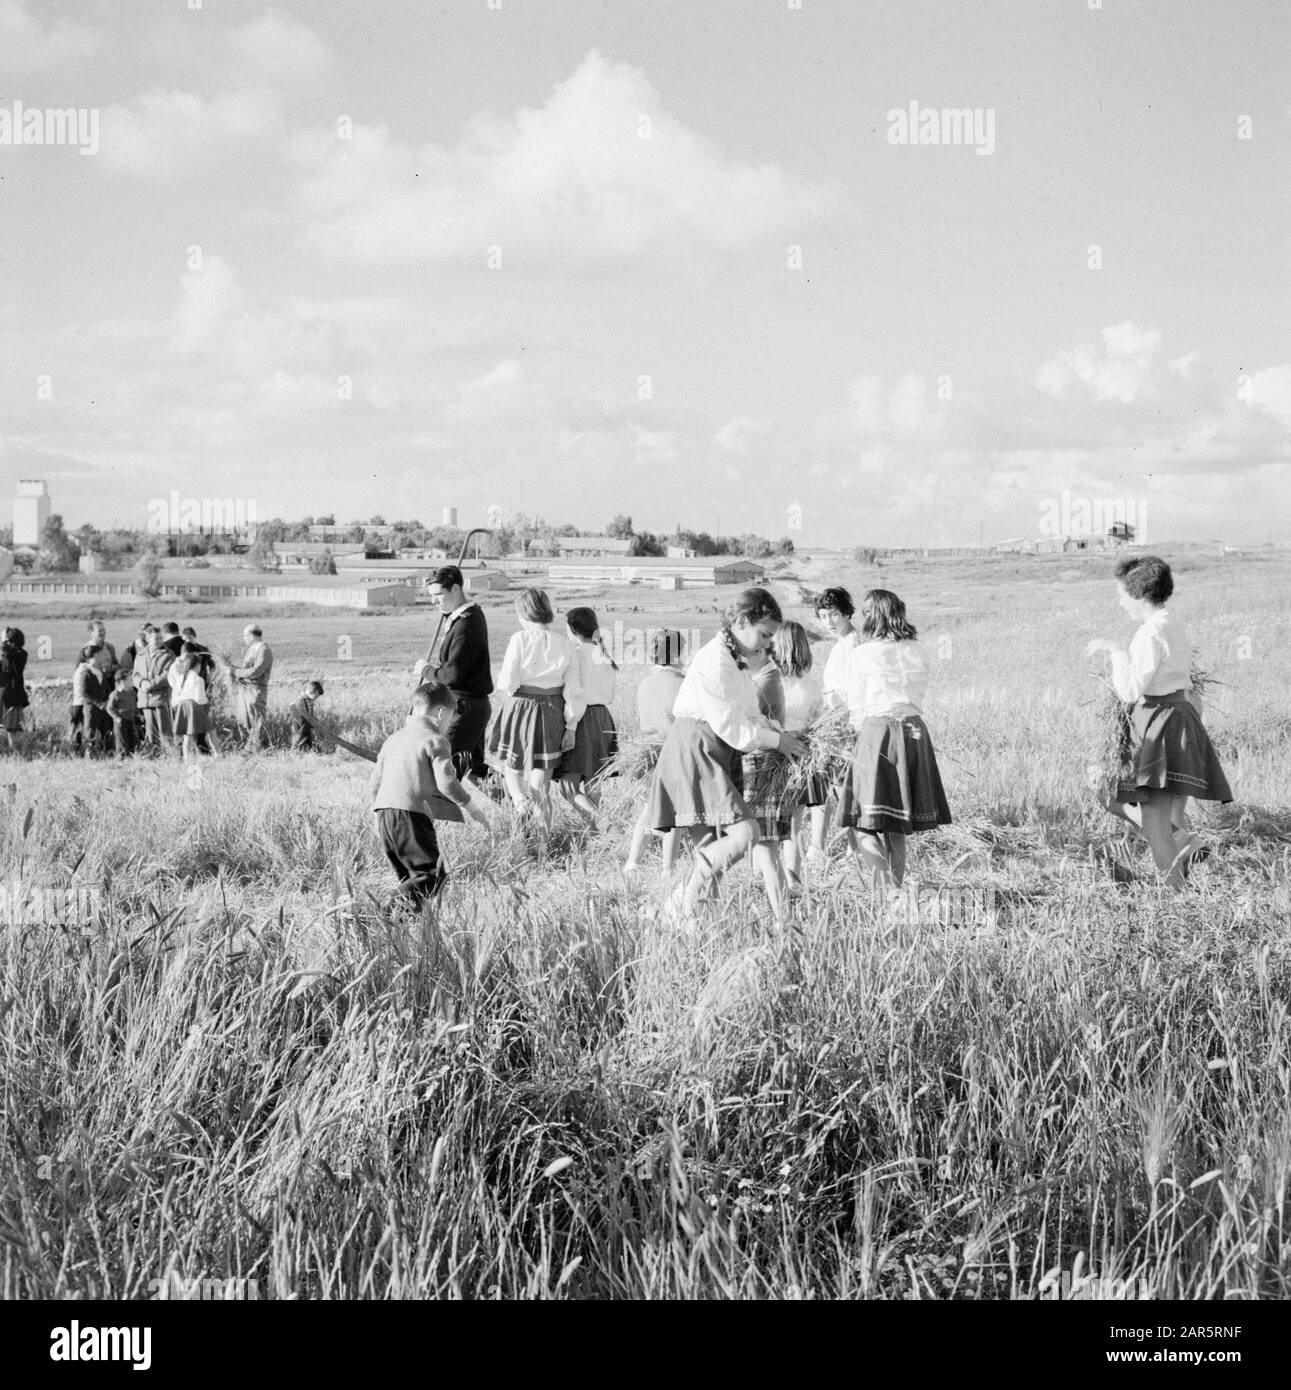 Israele 1964-1965. Gal'ed Kibutz Gal'ed. I residenti del kibbutz si sono riuniti in un campo di mais per la 1st tagliata il giorno prima della festa di Pasqua - pesach. Ragazze e ragazzi sono impegnati nella legatura di piccole pulegge Annotazione: Gal'ed (anche chiamato Yitzhak) è un kibbutz nel nord di Israele, situato nella pianura di Menasse. Data: 1964 luogo: Gal'ed, Israele Parole Chiave: Religione ebraica, kibbutz, campi di grano, festival di raccolto, rituali Foto Stock